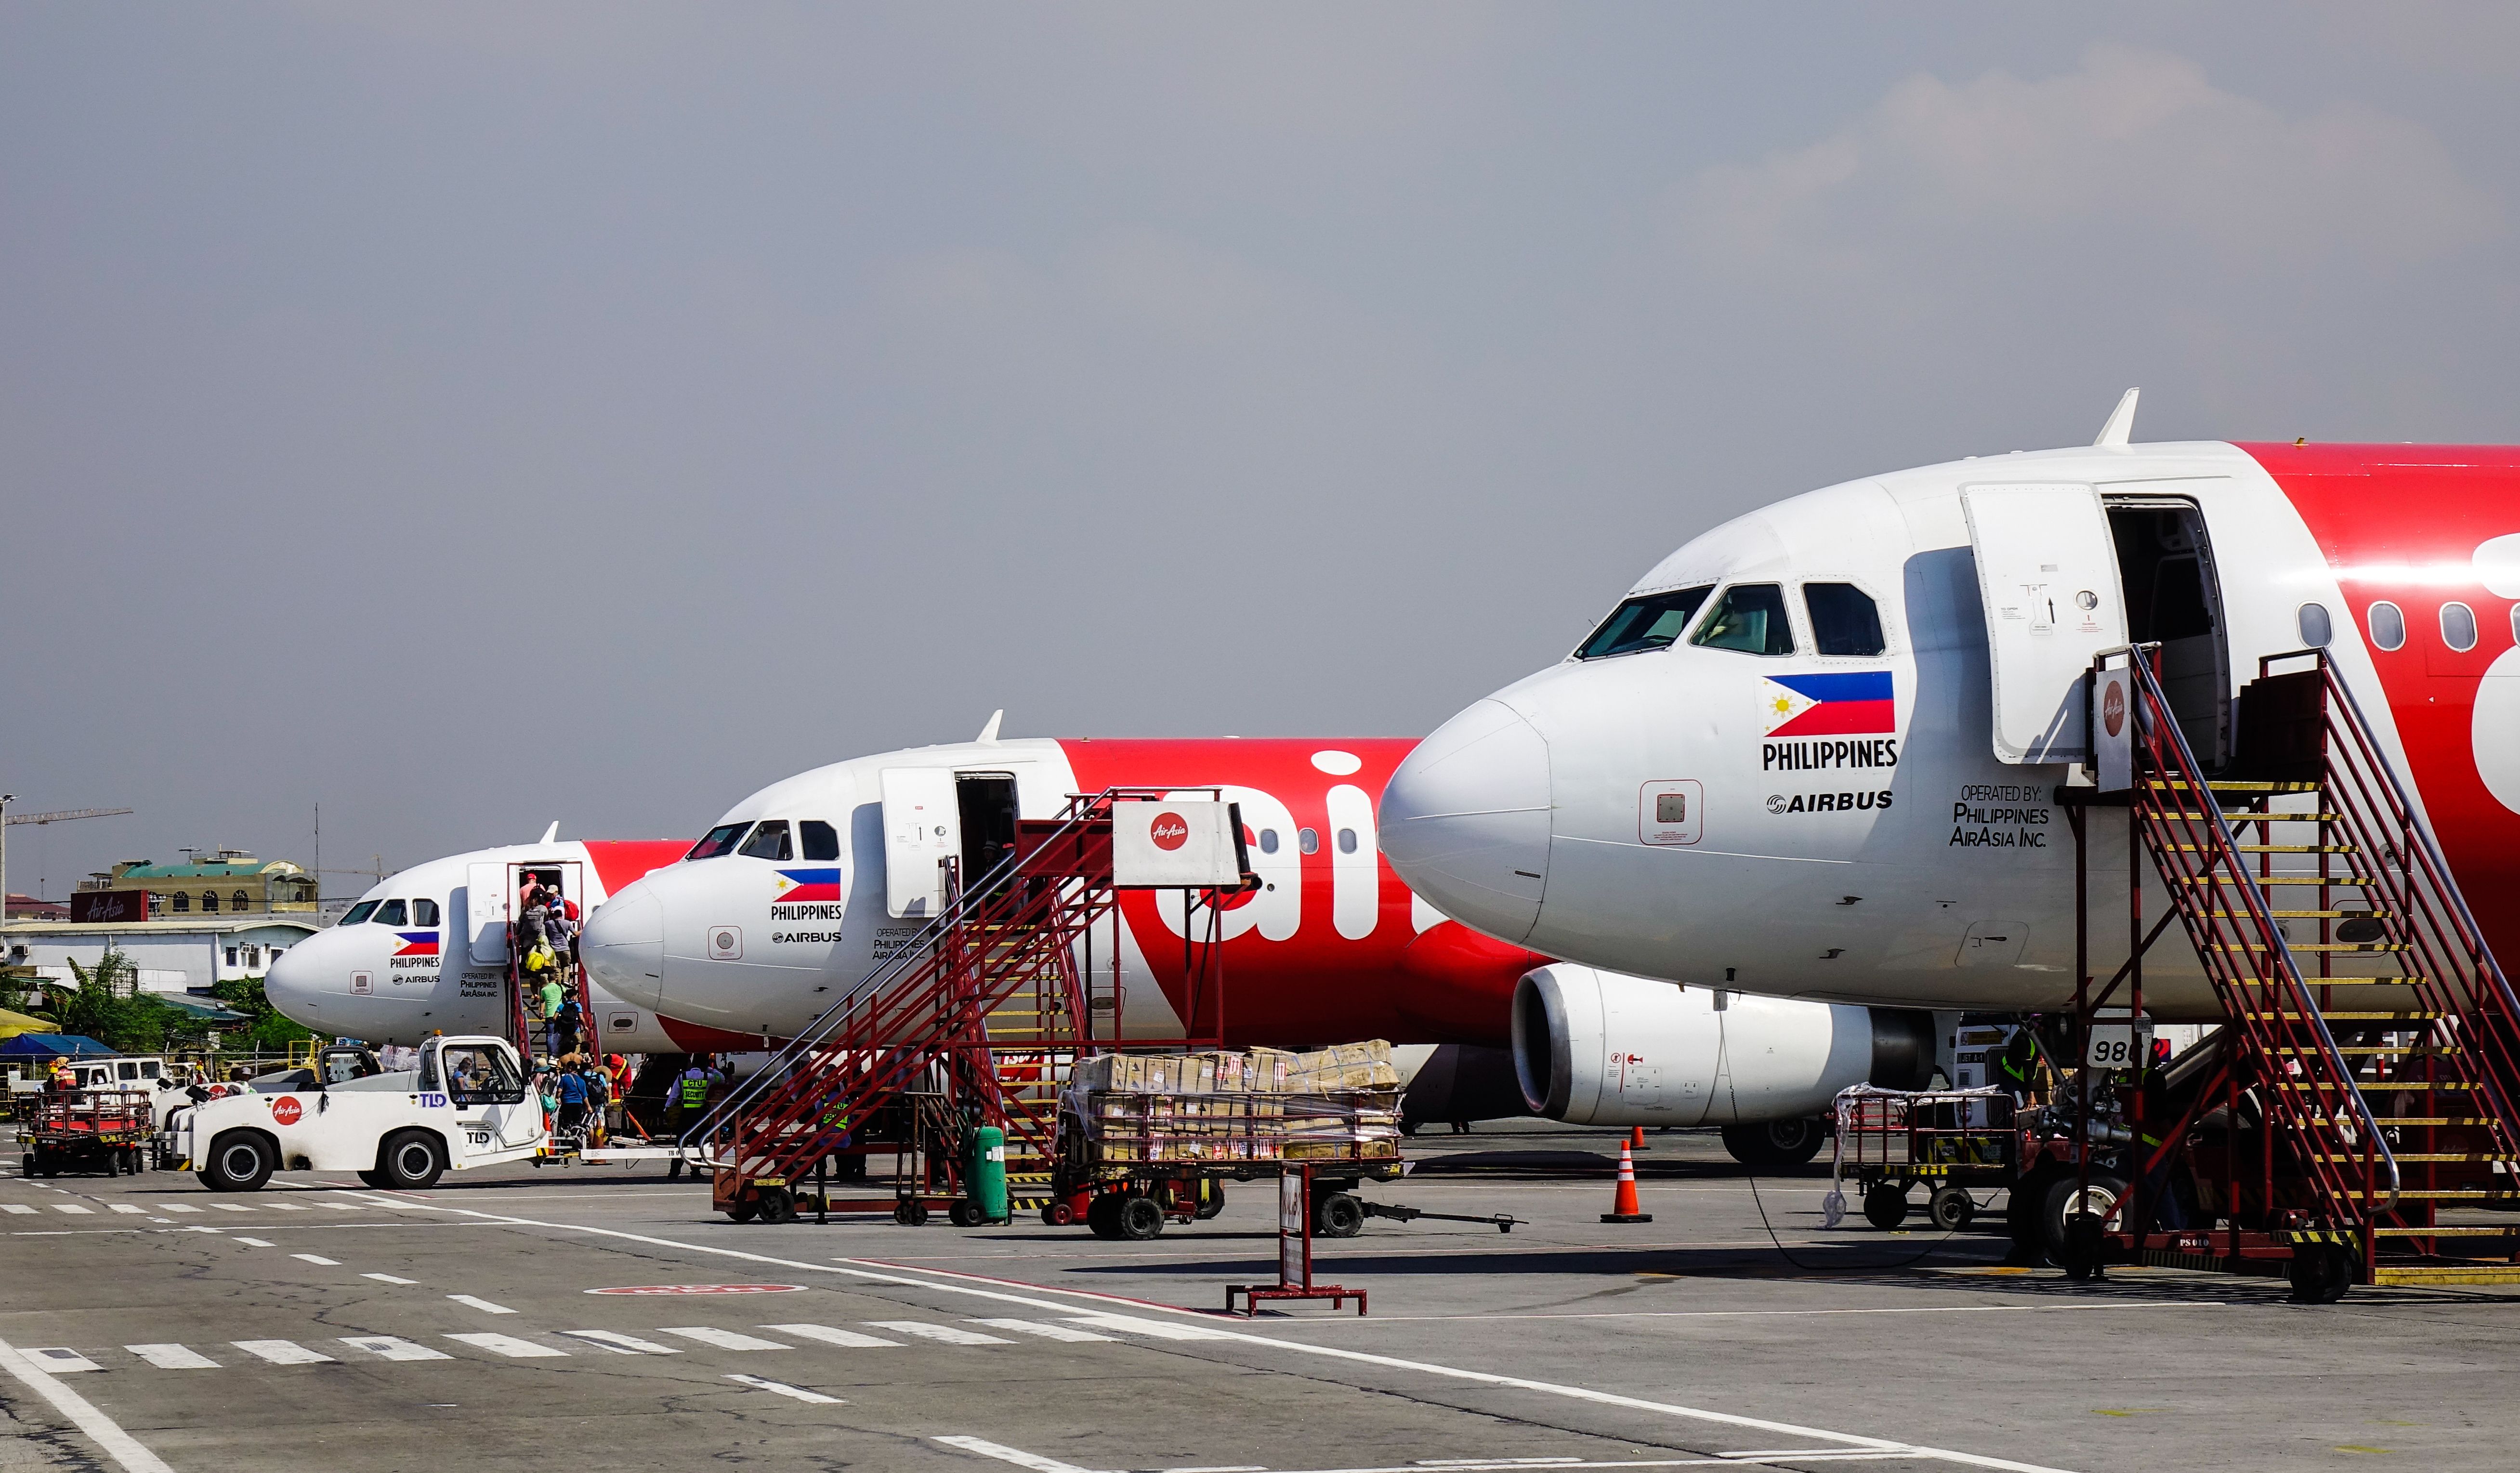 AirAsia Philippines Airbus A320s